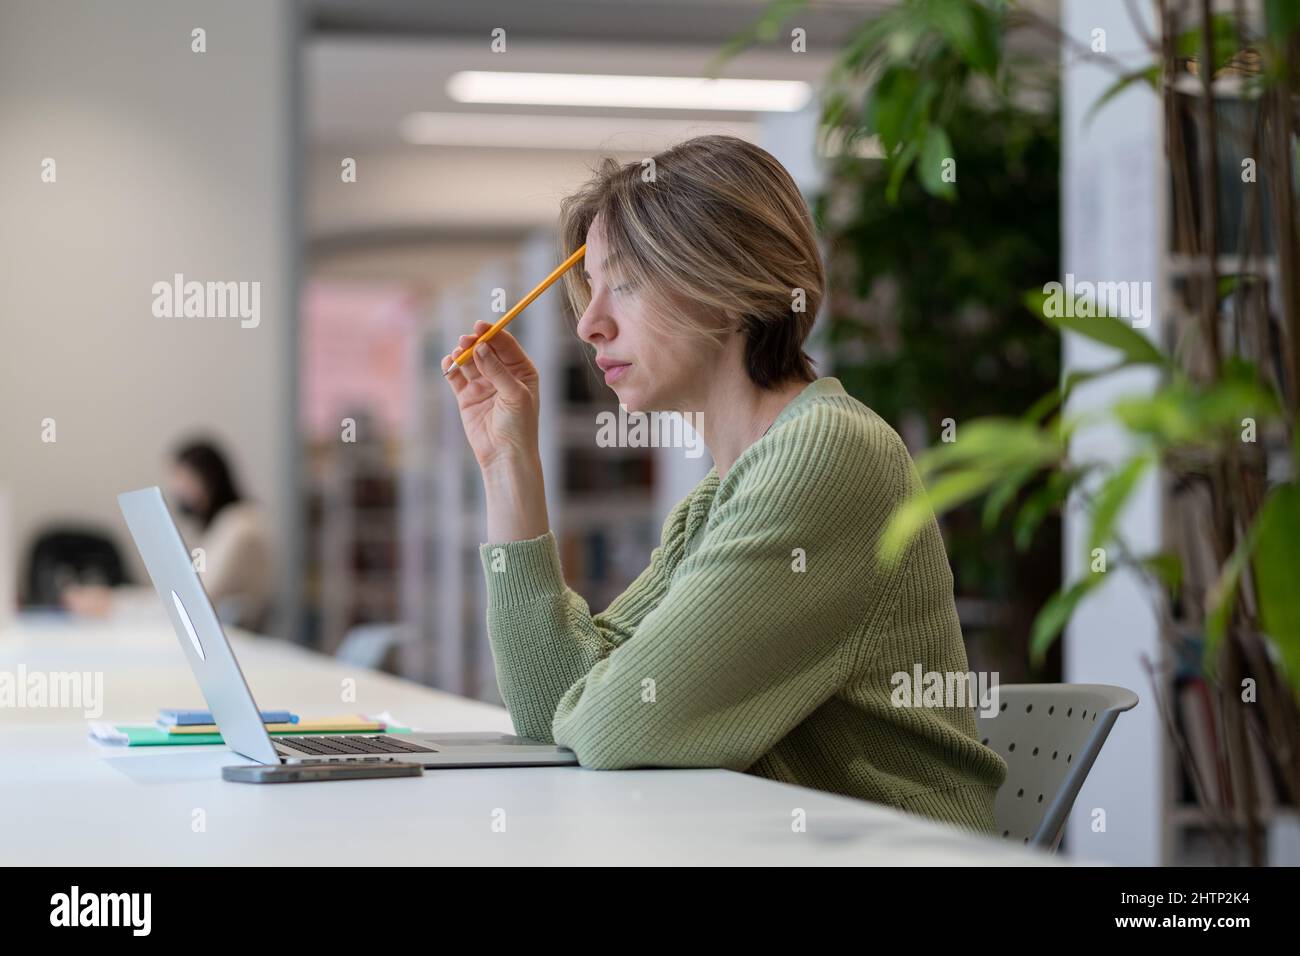 Studentessa matura femminile concentrata che studia online su laptop in una moderna biblioteca circondata dal verde Foto Stock